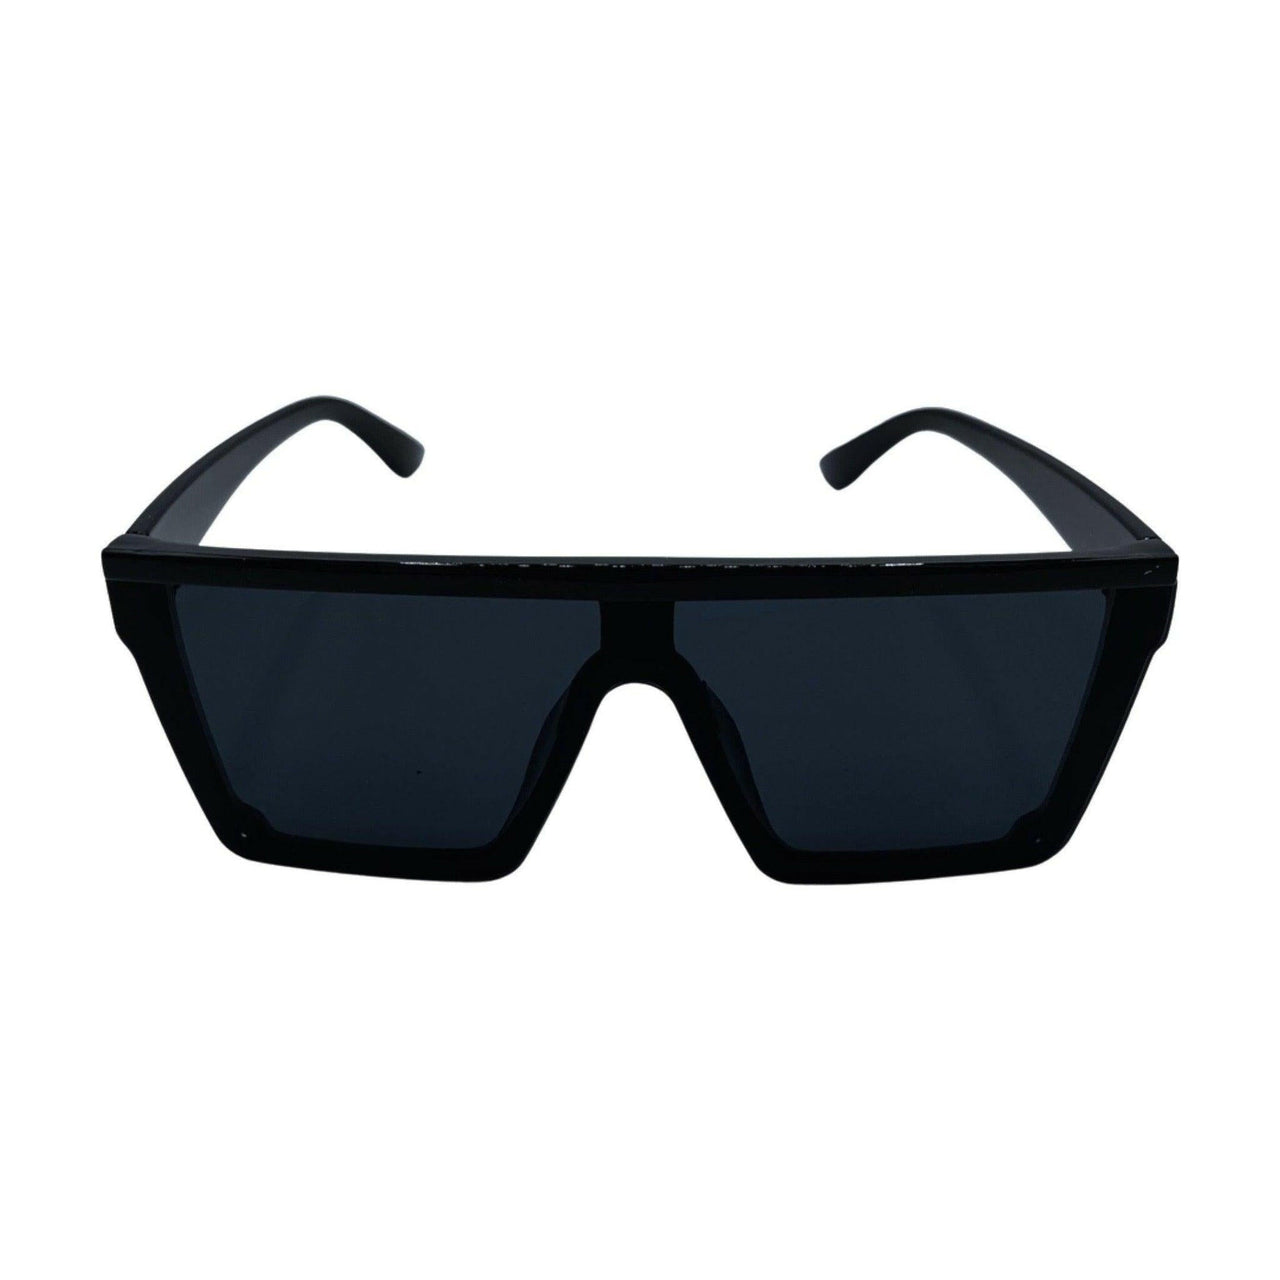 Black OG Sunglasses